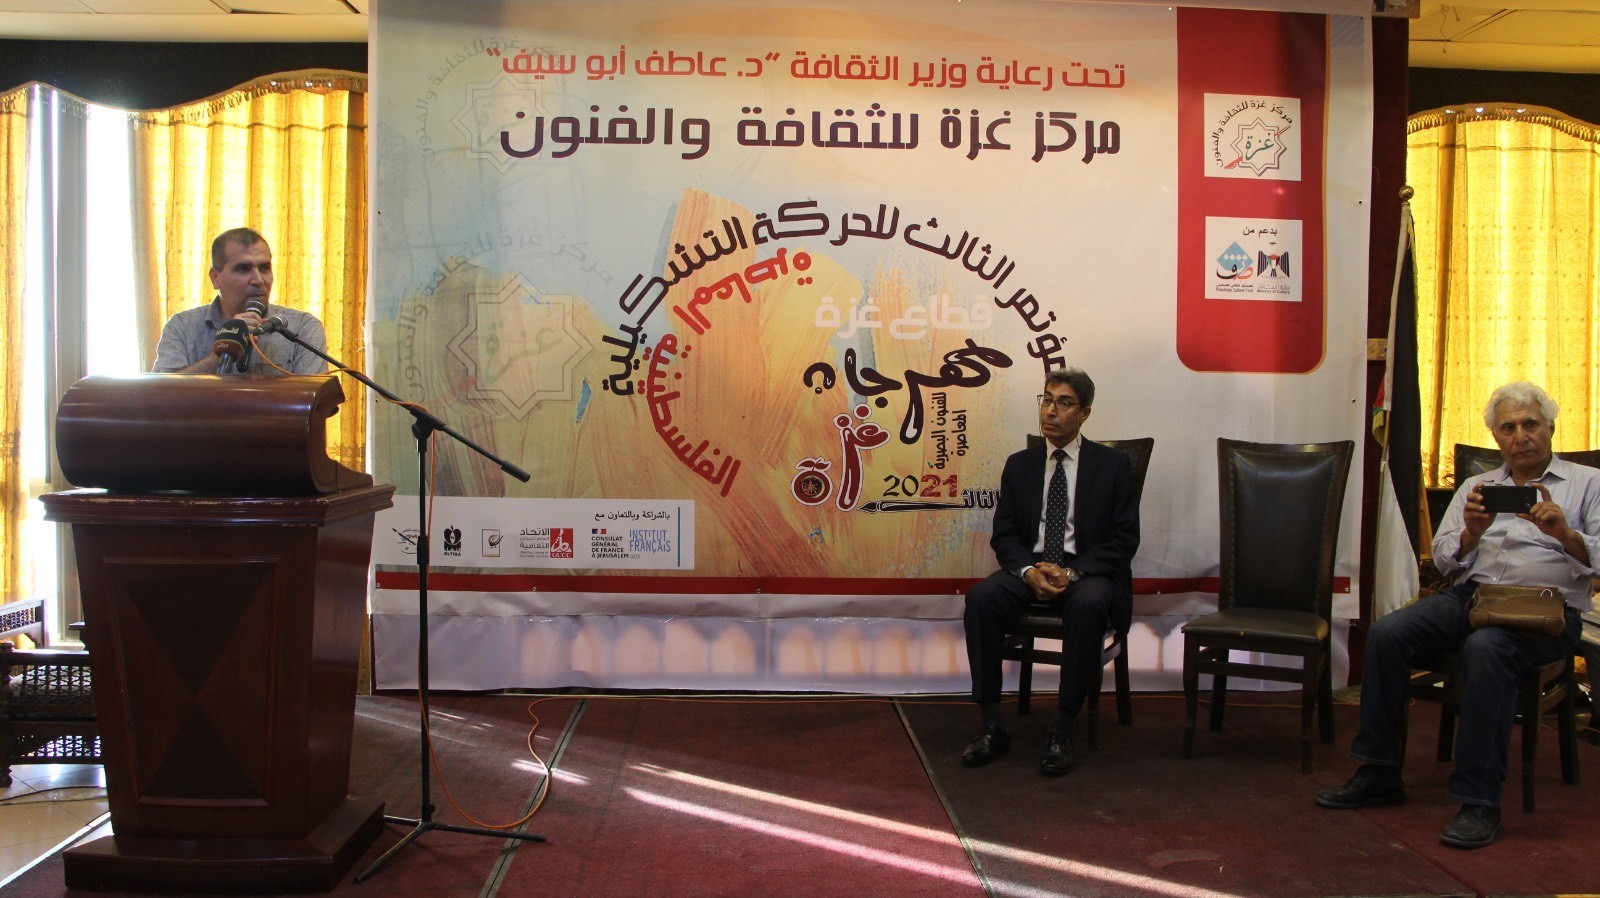 كلمة الوزير أبو سيف خلال افتتاح جلسات المؤتمر الثالث للحركة التشكيلية الفلسطينية بغزّة